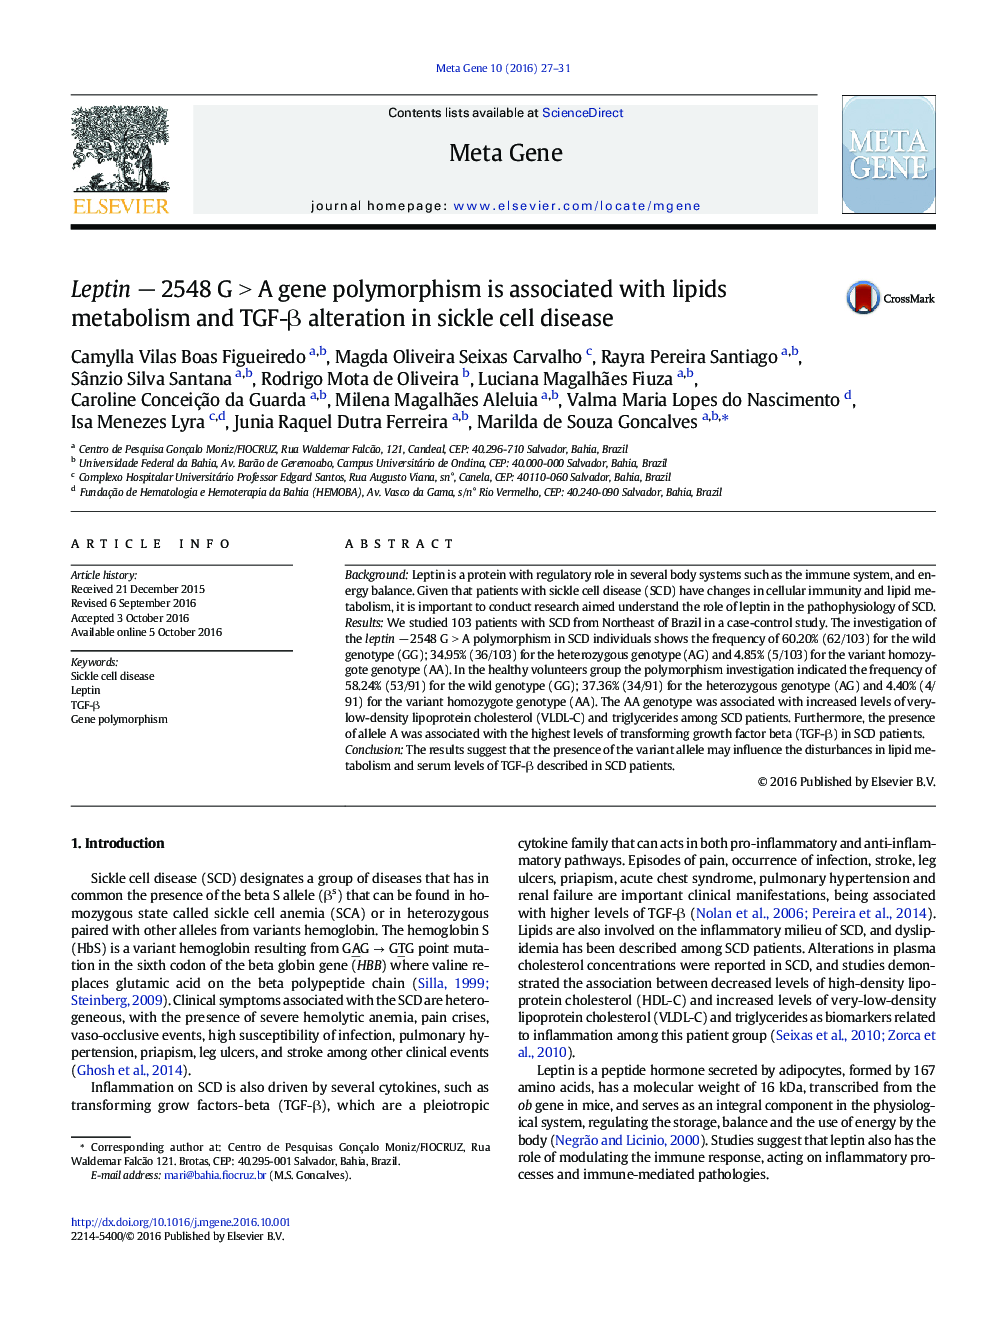 Leptin âÂ 2548 GÂ >Â A gene polymorphism is associated with lipids metabolism and TGF-Î² alteration in sickle cell disease